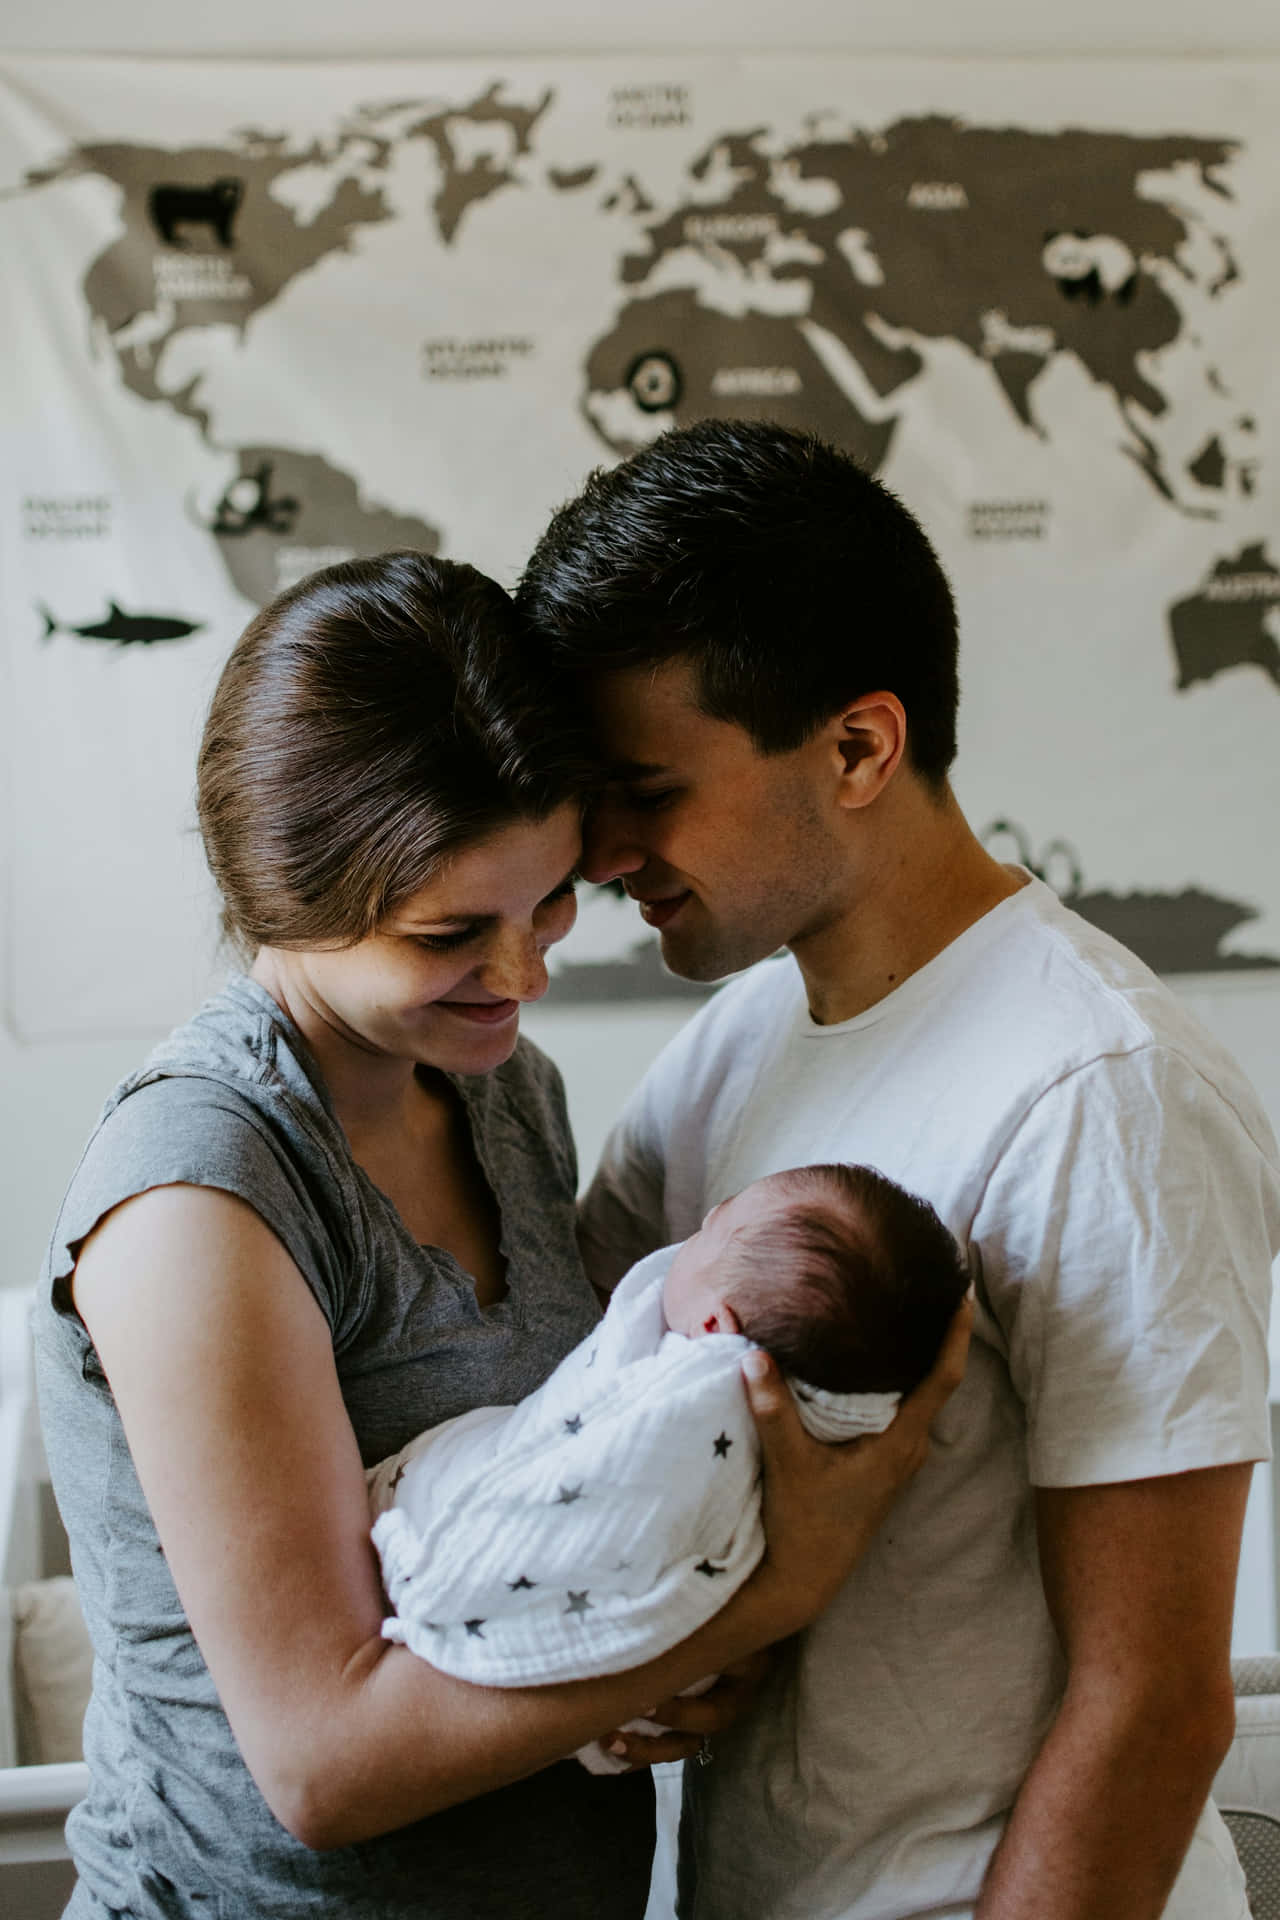 Newborn Embrace Family Moment.jpg Wallpaper